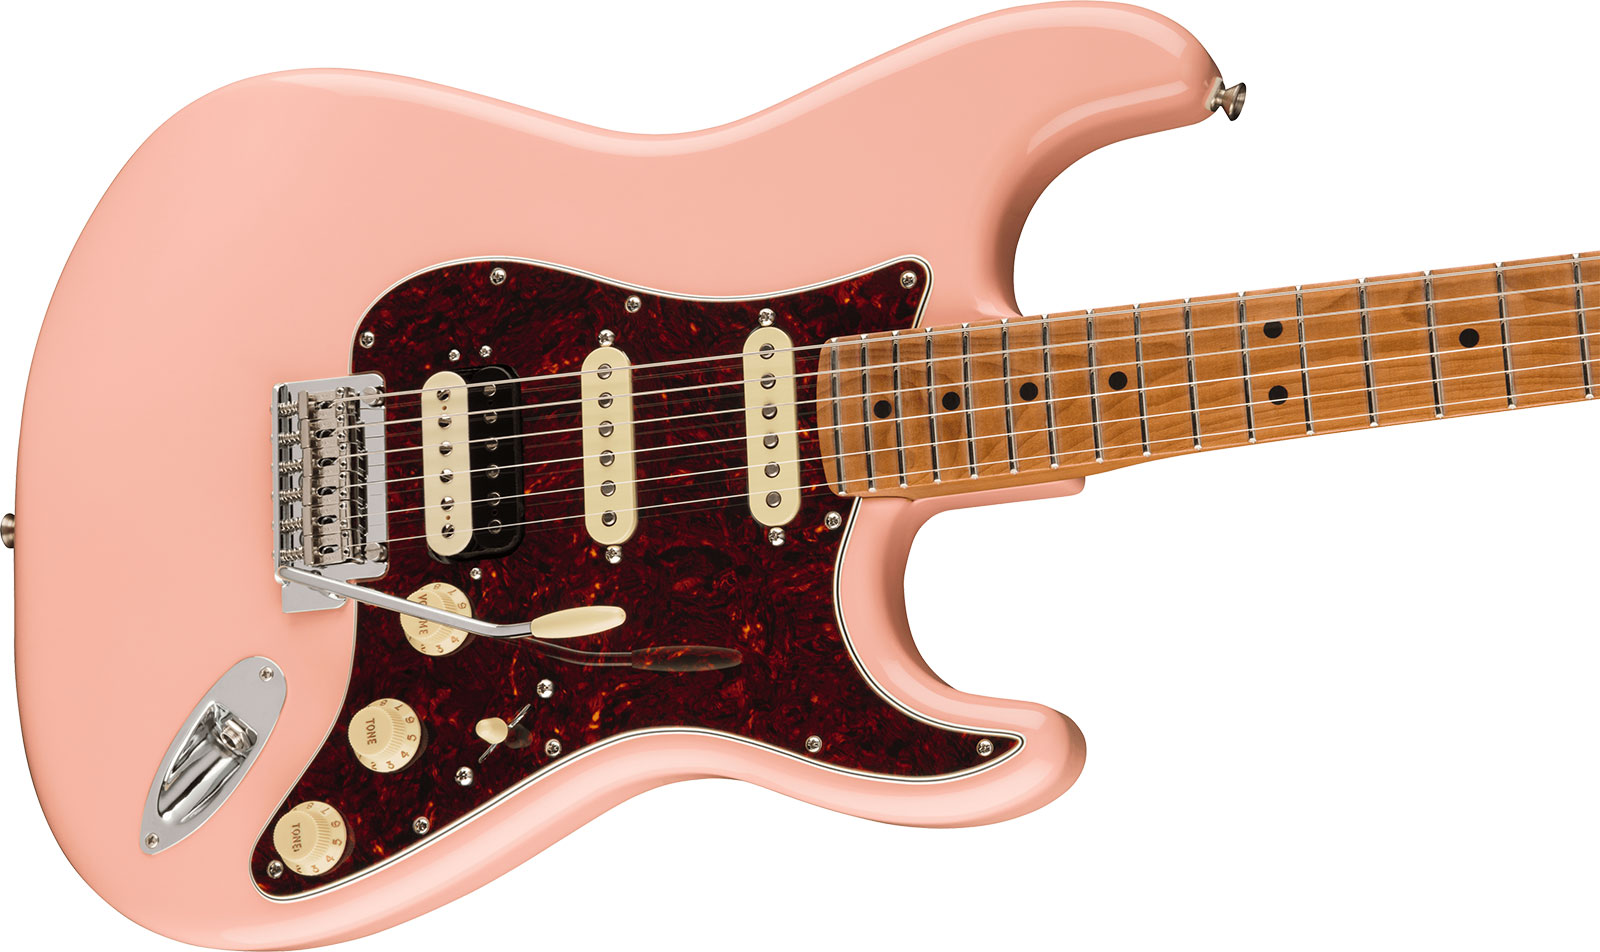 Fender Strat Player Roasted Neck Ltd Mex Hss Trem Mn - Shell Pink - Str shape electric guitar - Variation 2